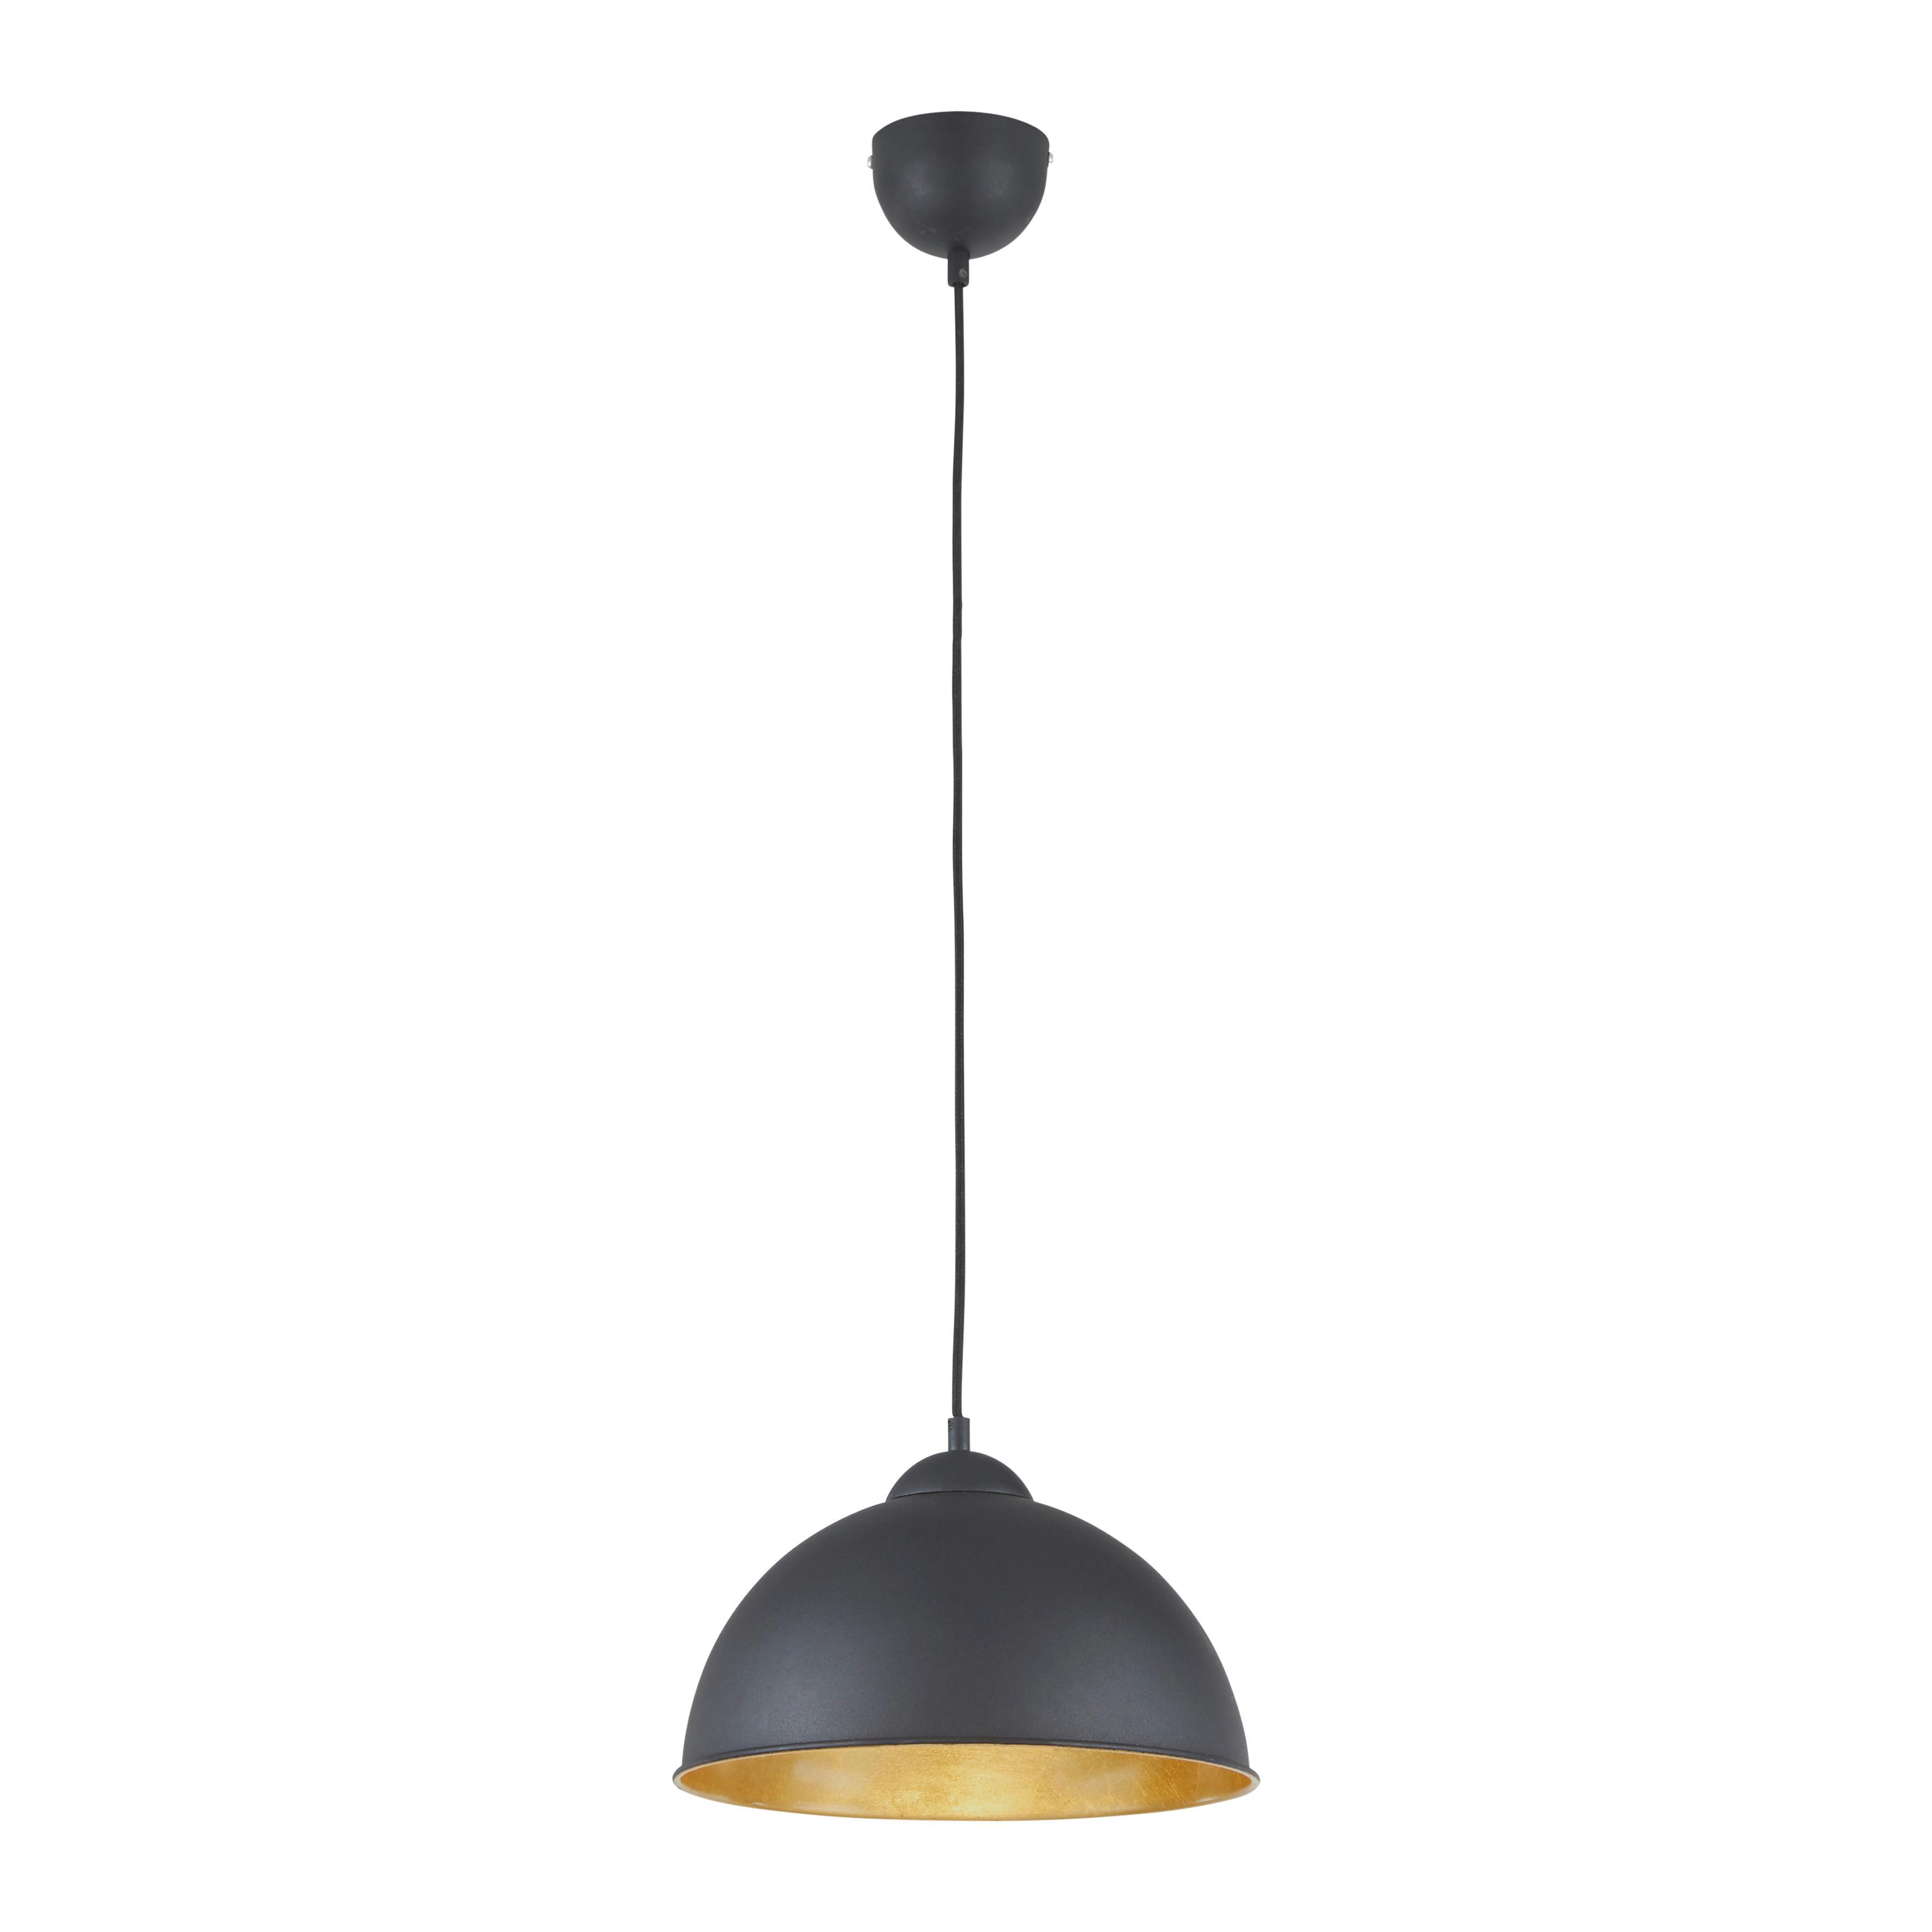 Závesná Lampa Jimmy 30/105 Cm, 60 Watt - čierna/zlatá, Štýlový, kov (30/105cm) - Modern Living